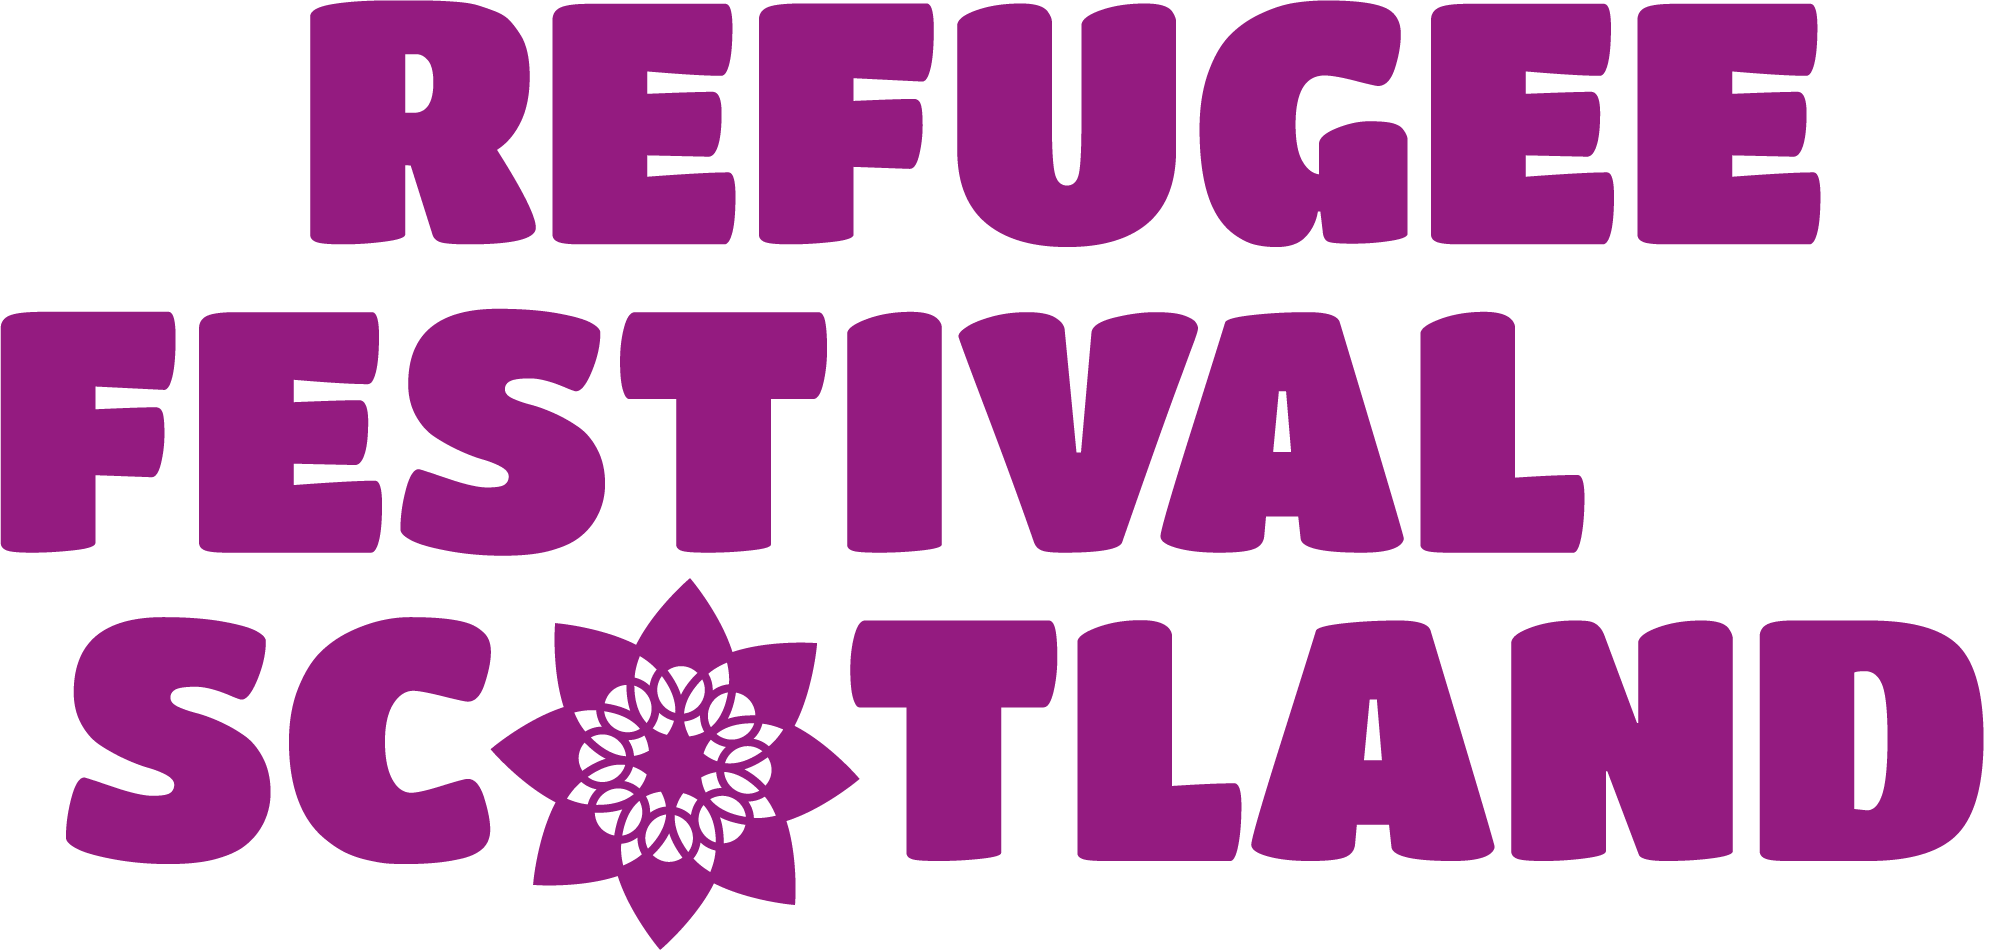 Refugee Festival Scotland logo